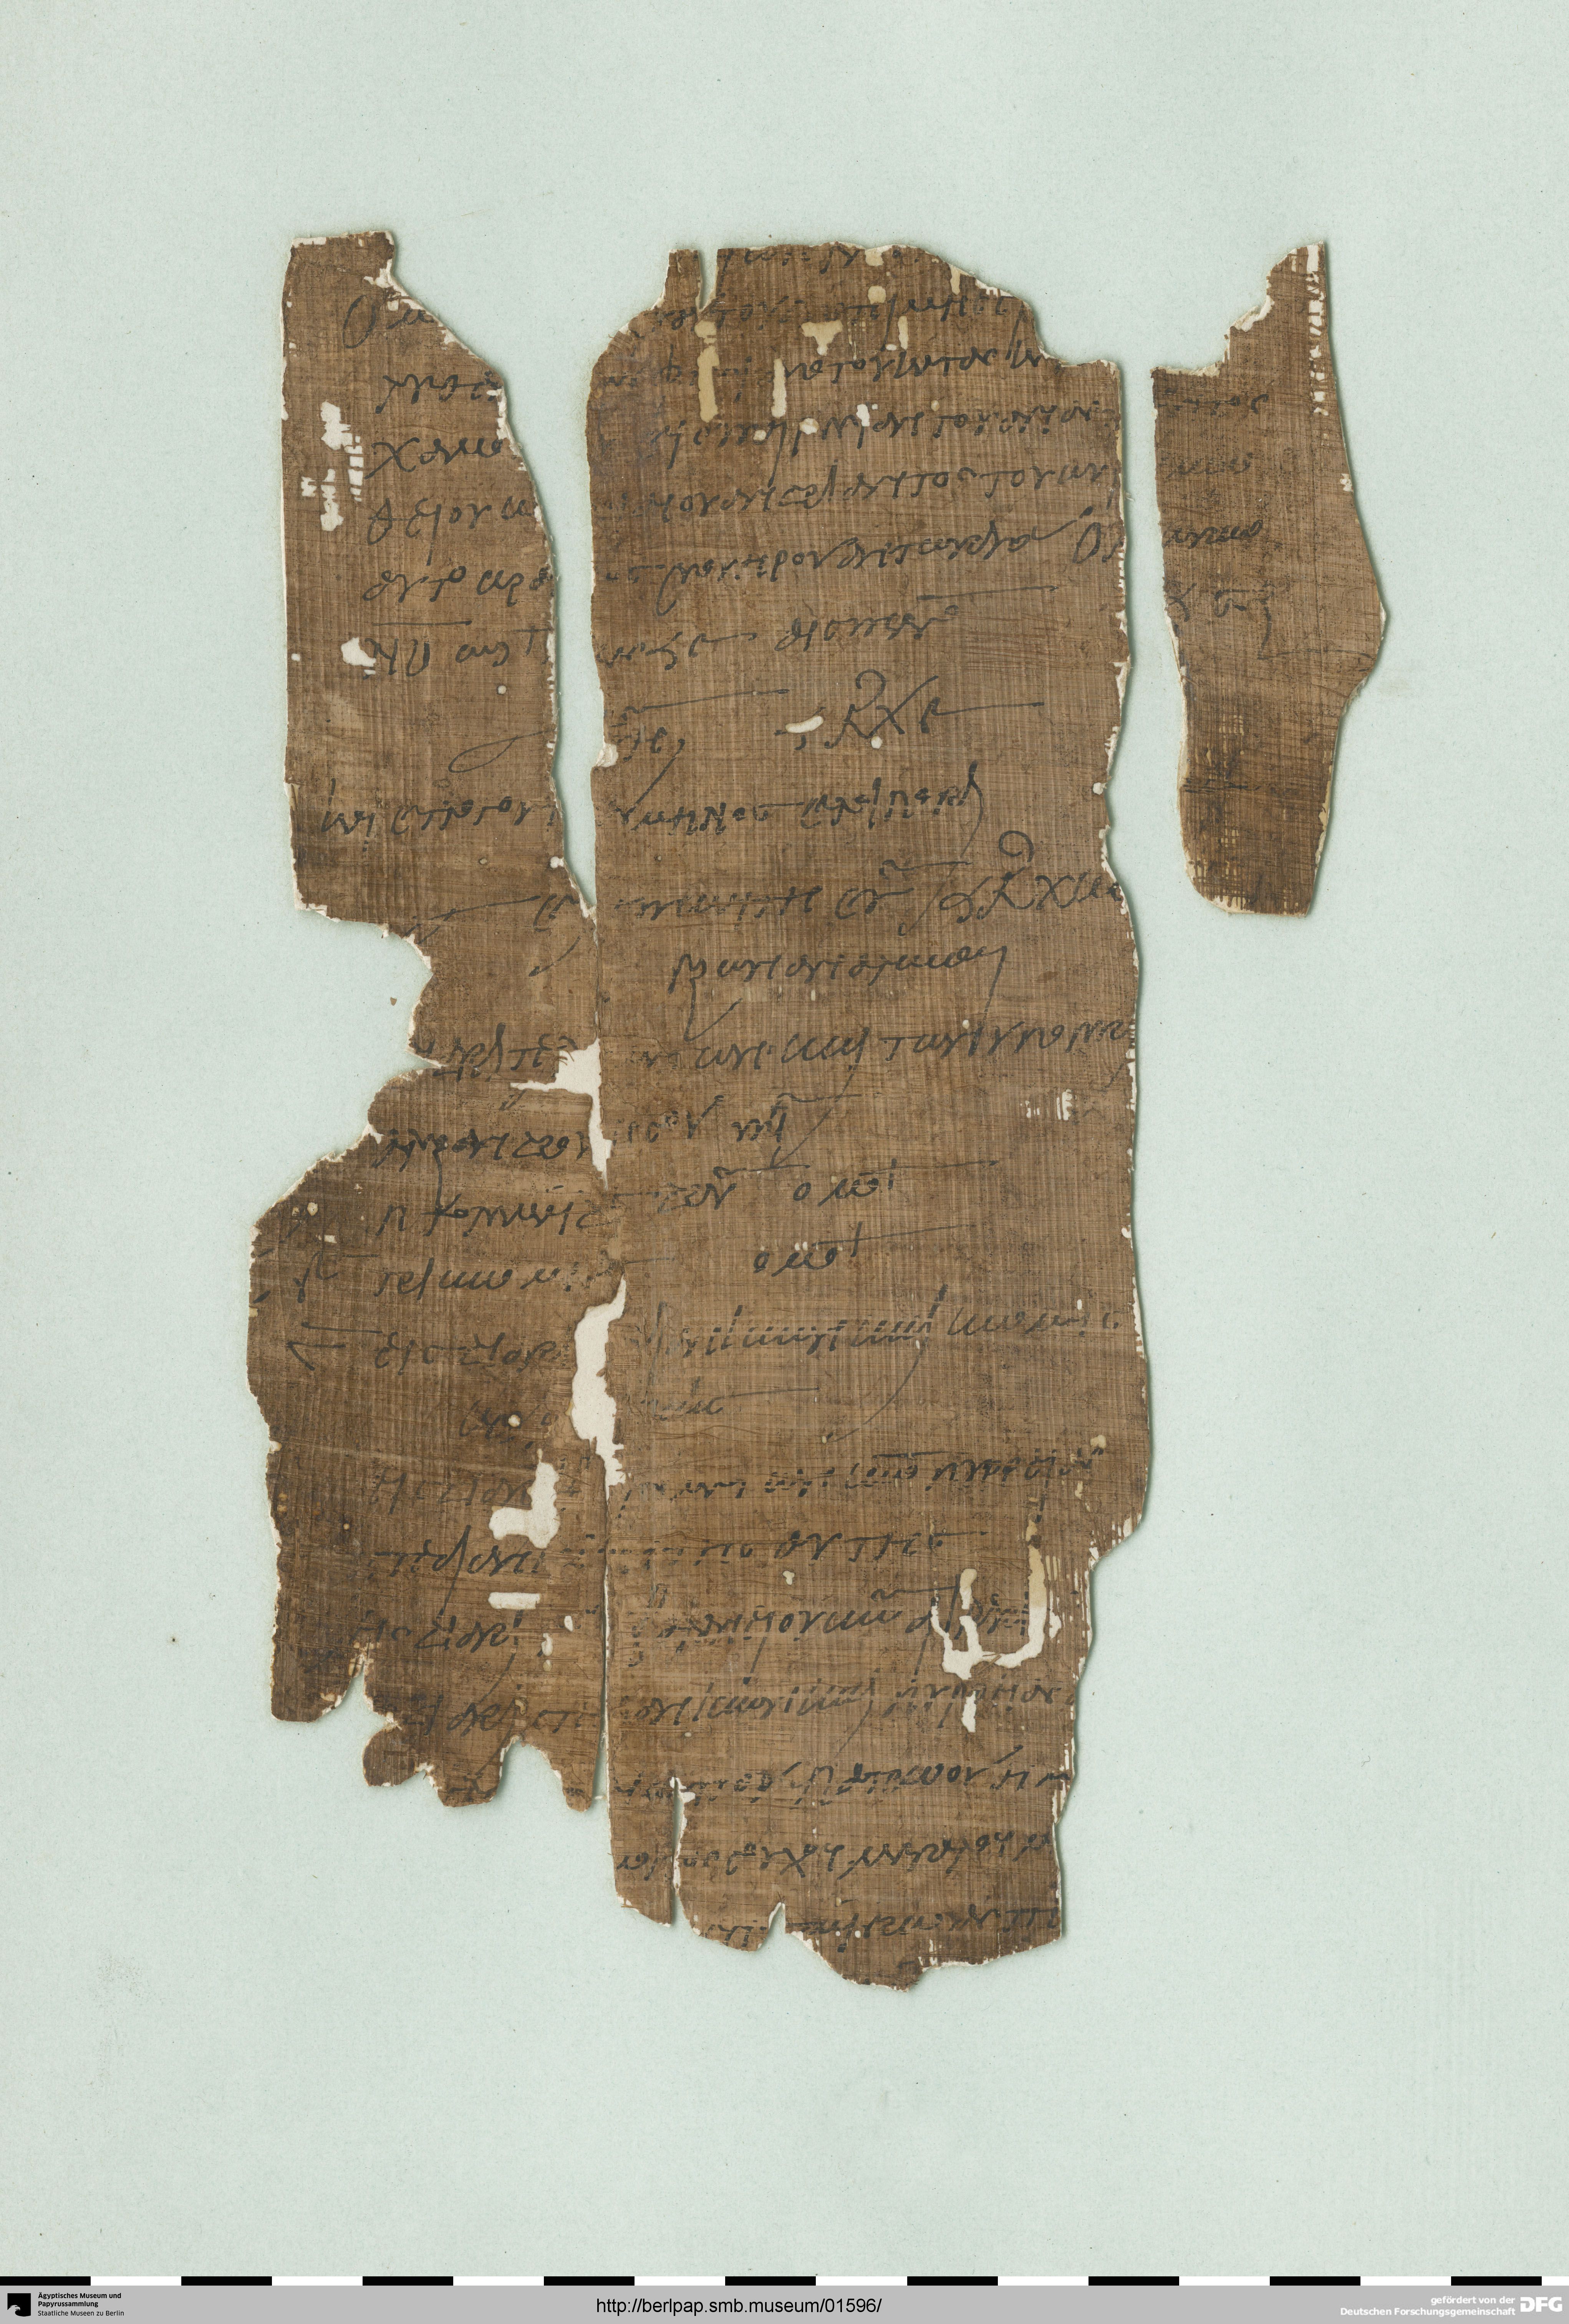 http://berlpap.smb.museum/Original/P_05087_R_001.jpg (Ägyptisches Museum und Papyrussammlung, Staatliche Museen zu Berlin CC BY-NC-SA)